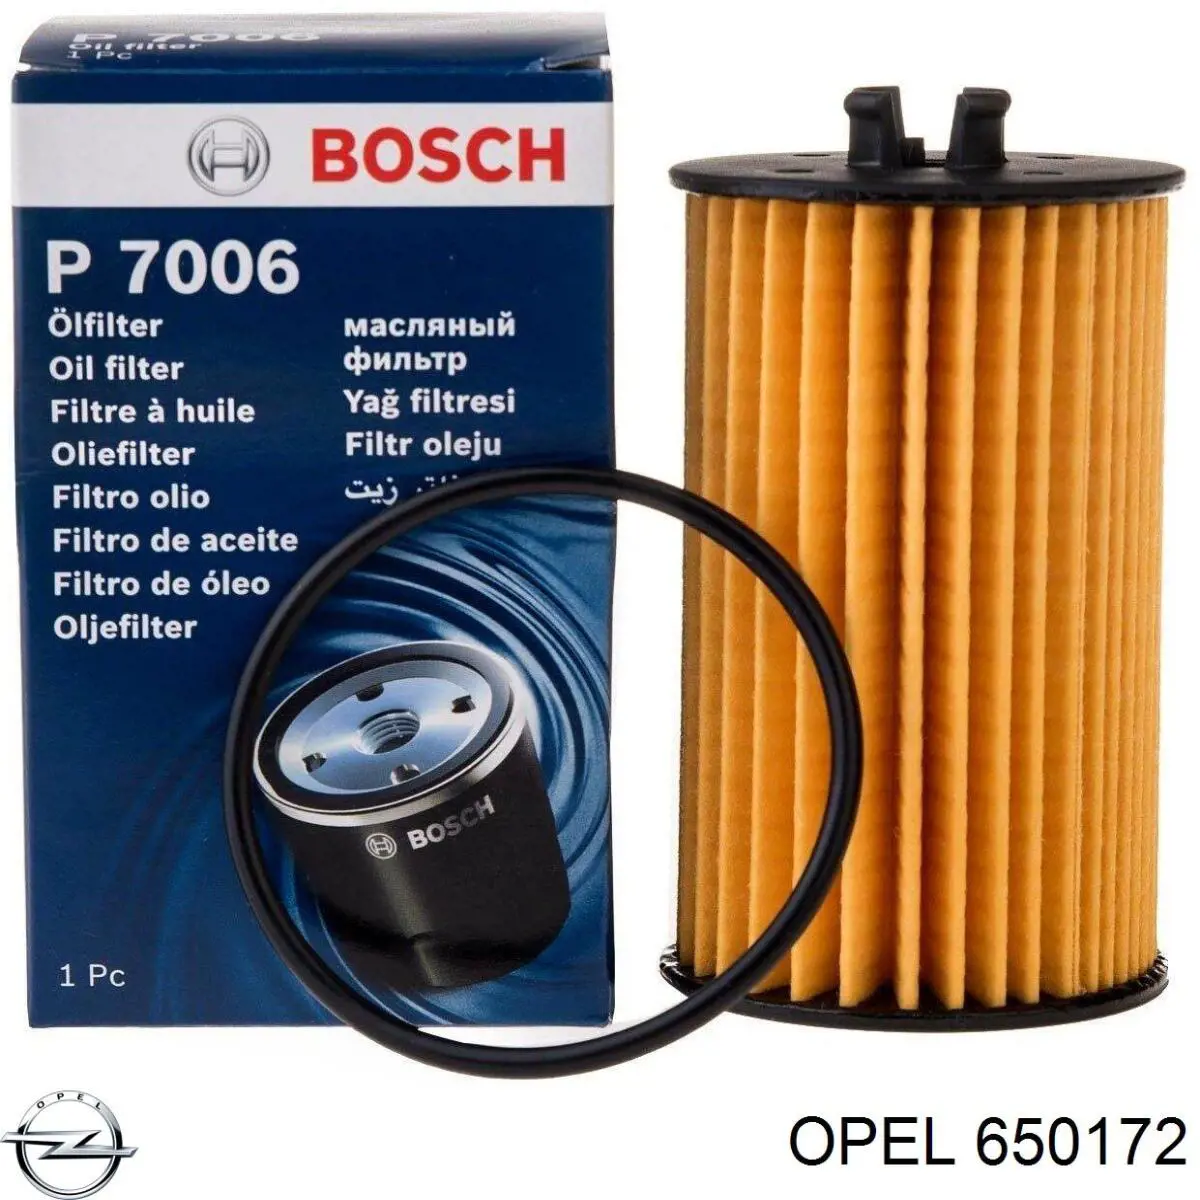 650172 Opel масляный фильтр